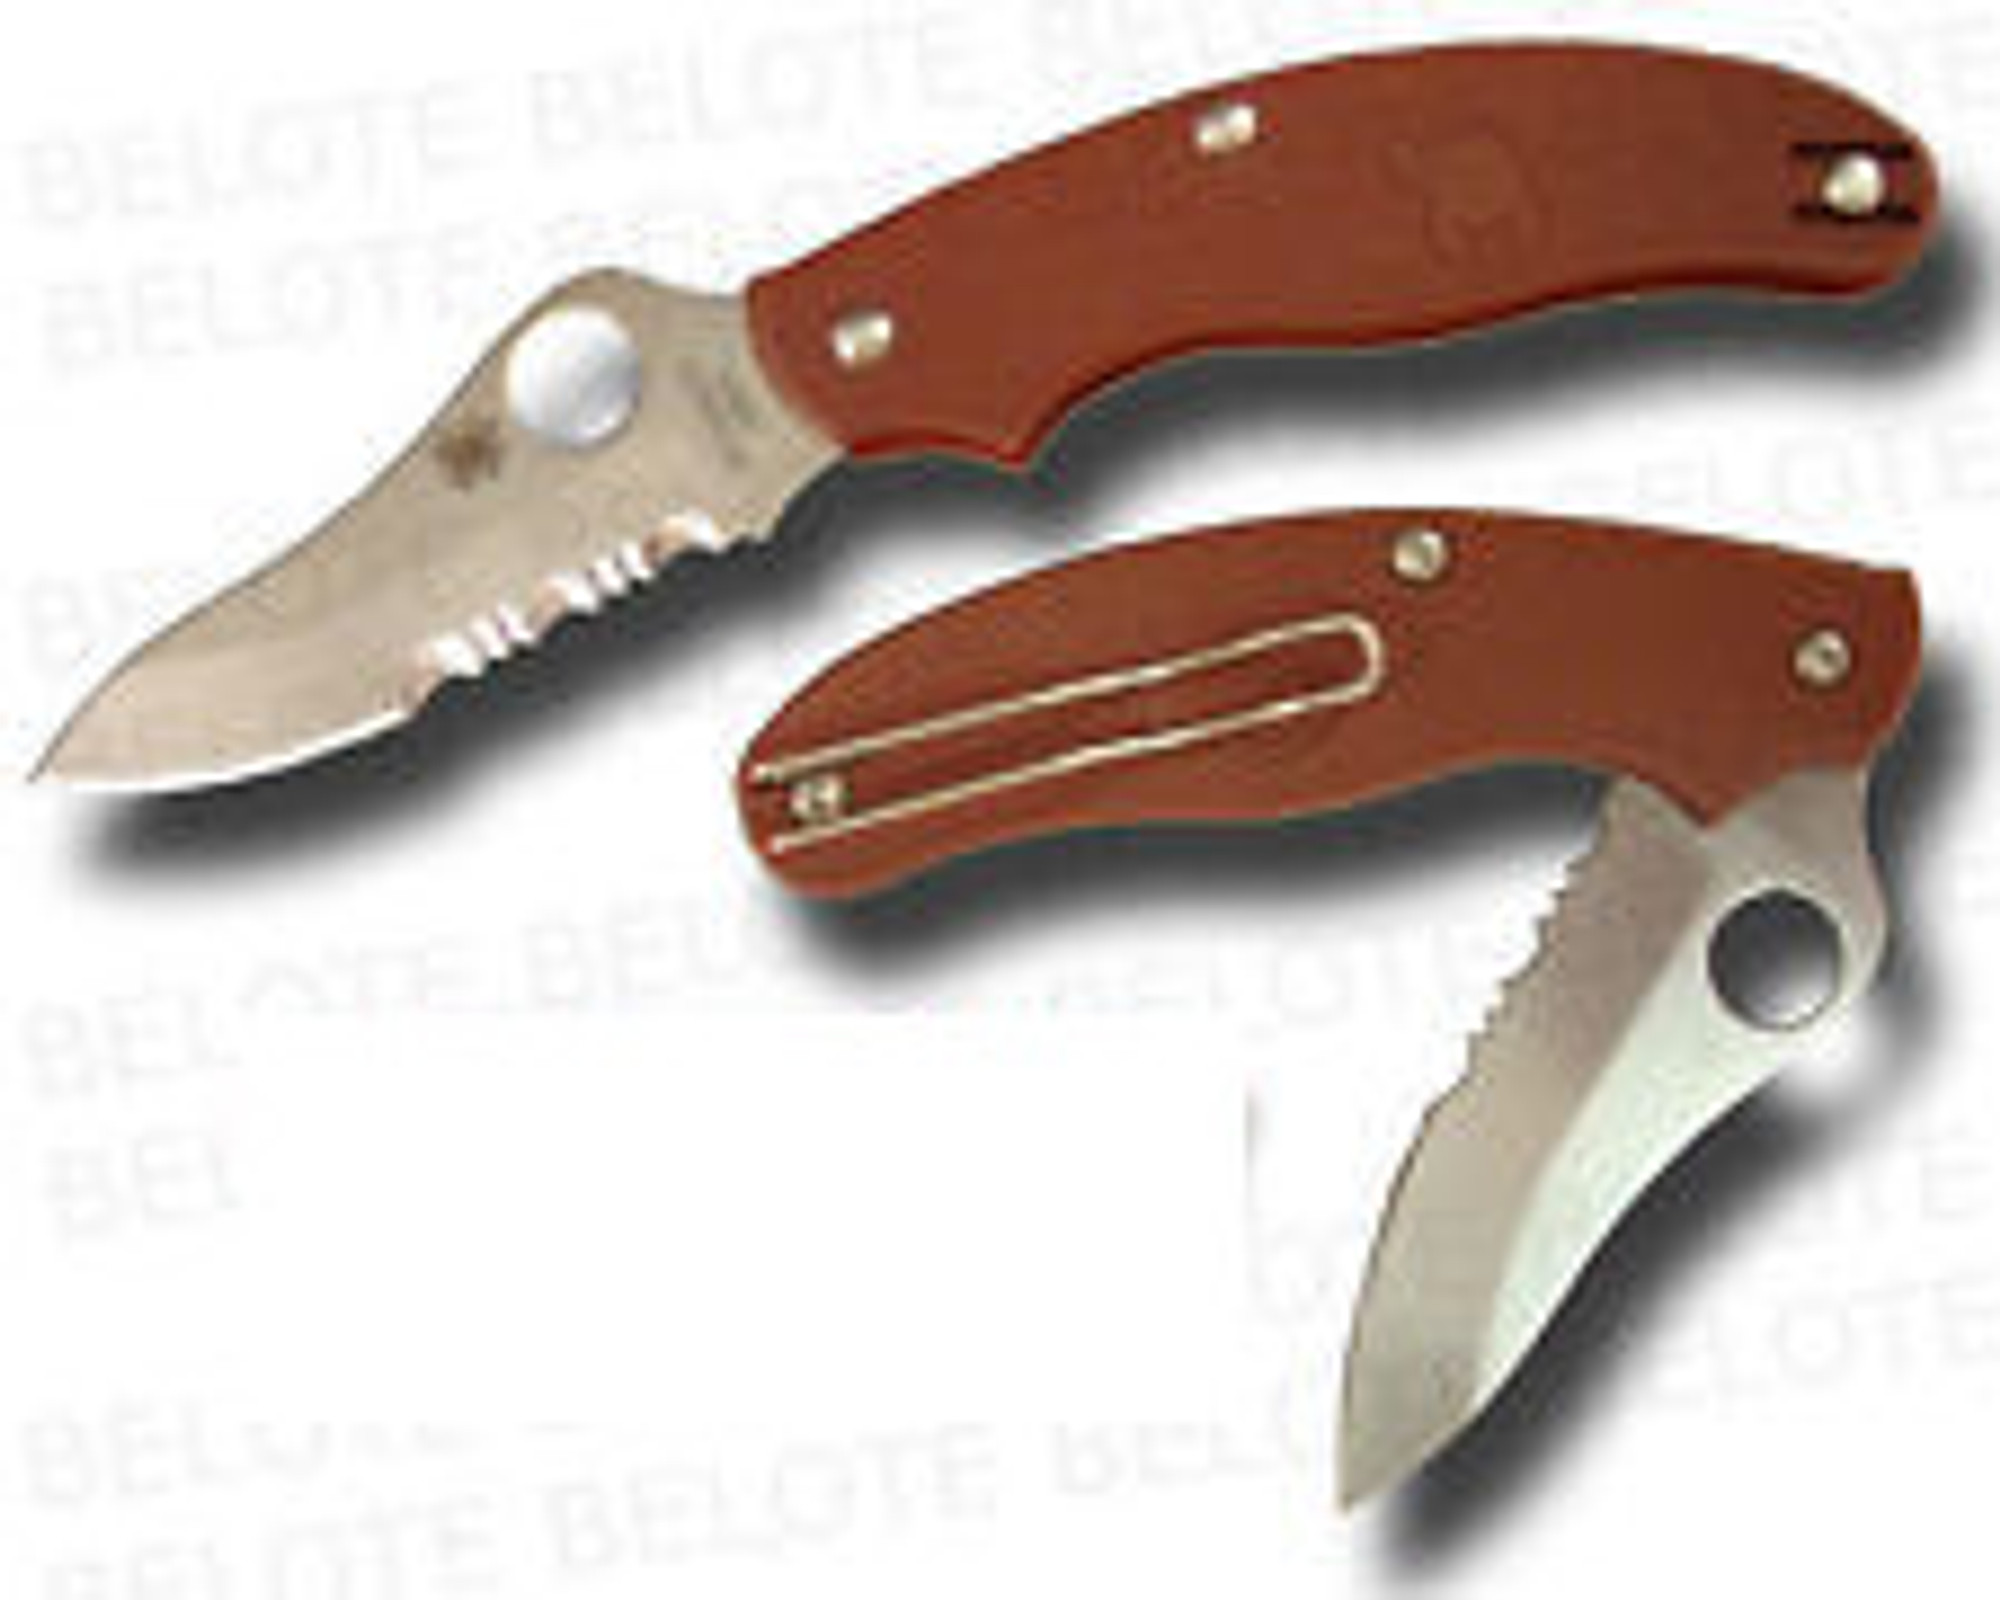 Spyderco UK Penknife Maroon FRN Drop Point Combo Edge Folding Knife